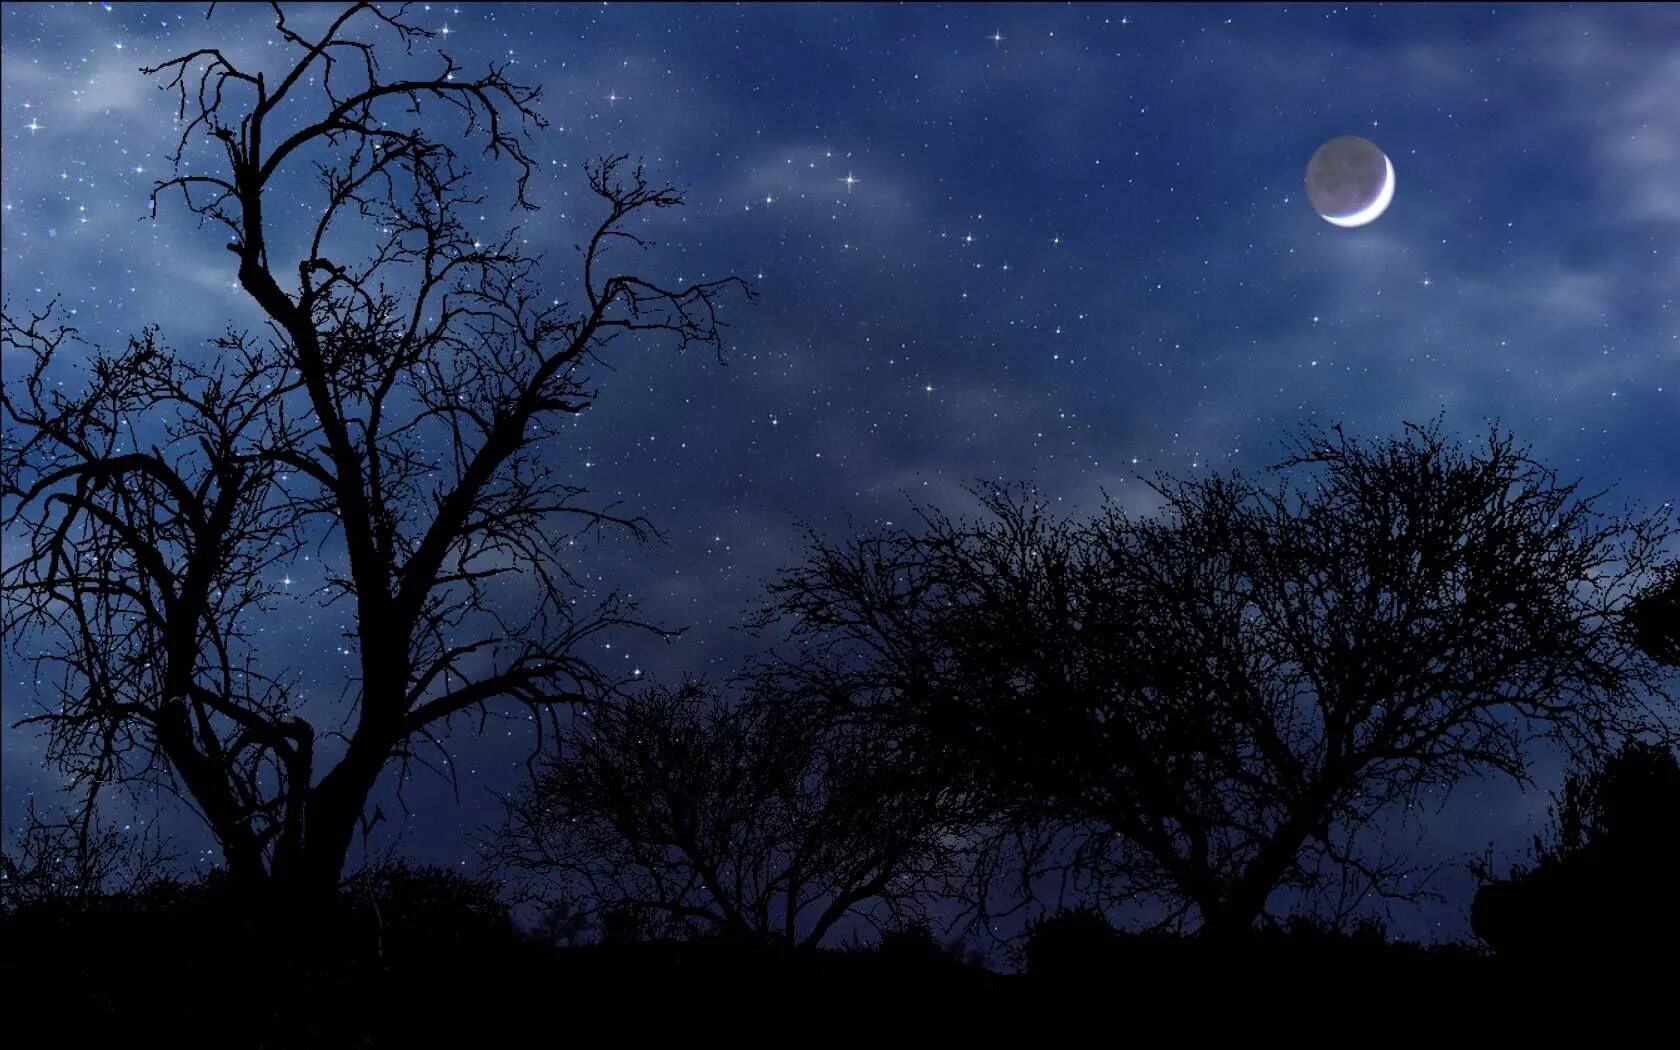 Окр мир ночью. Ночное небо с луной. Ночное небо со звездами и луной. Ночное небо с месяцем. Звездное небо с луной.